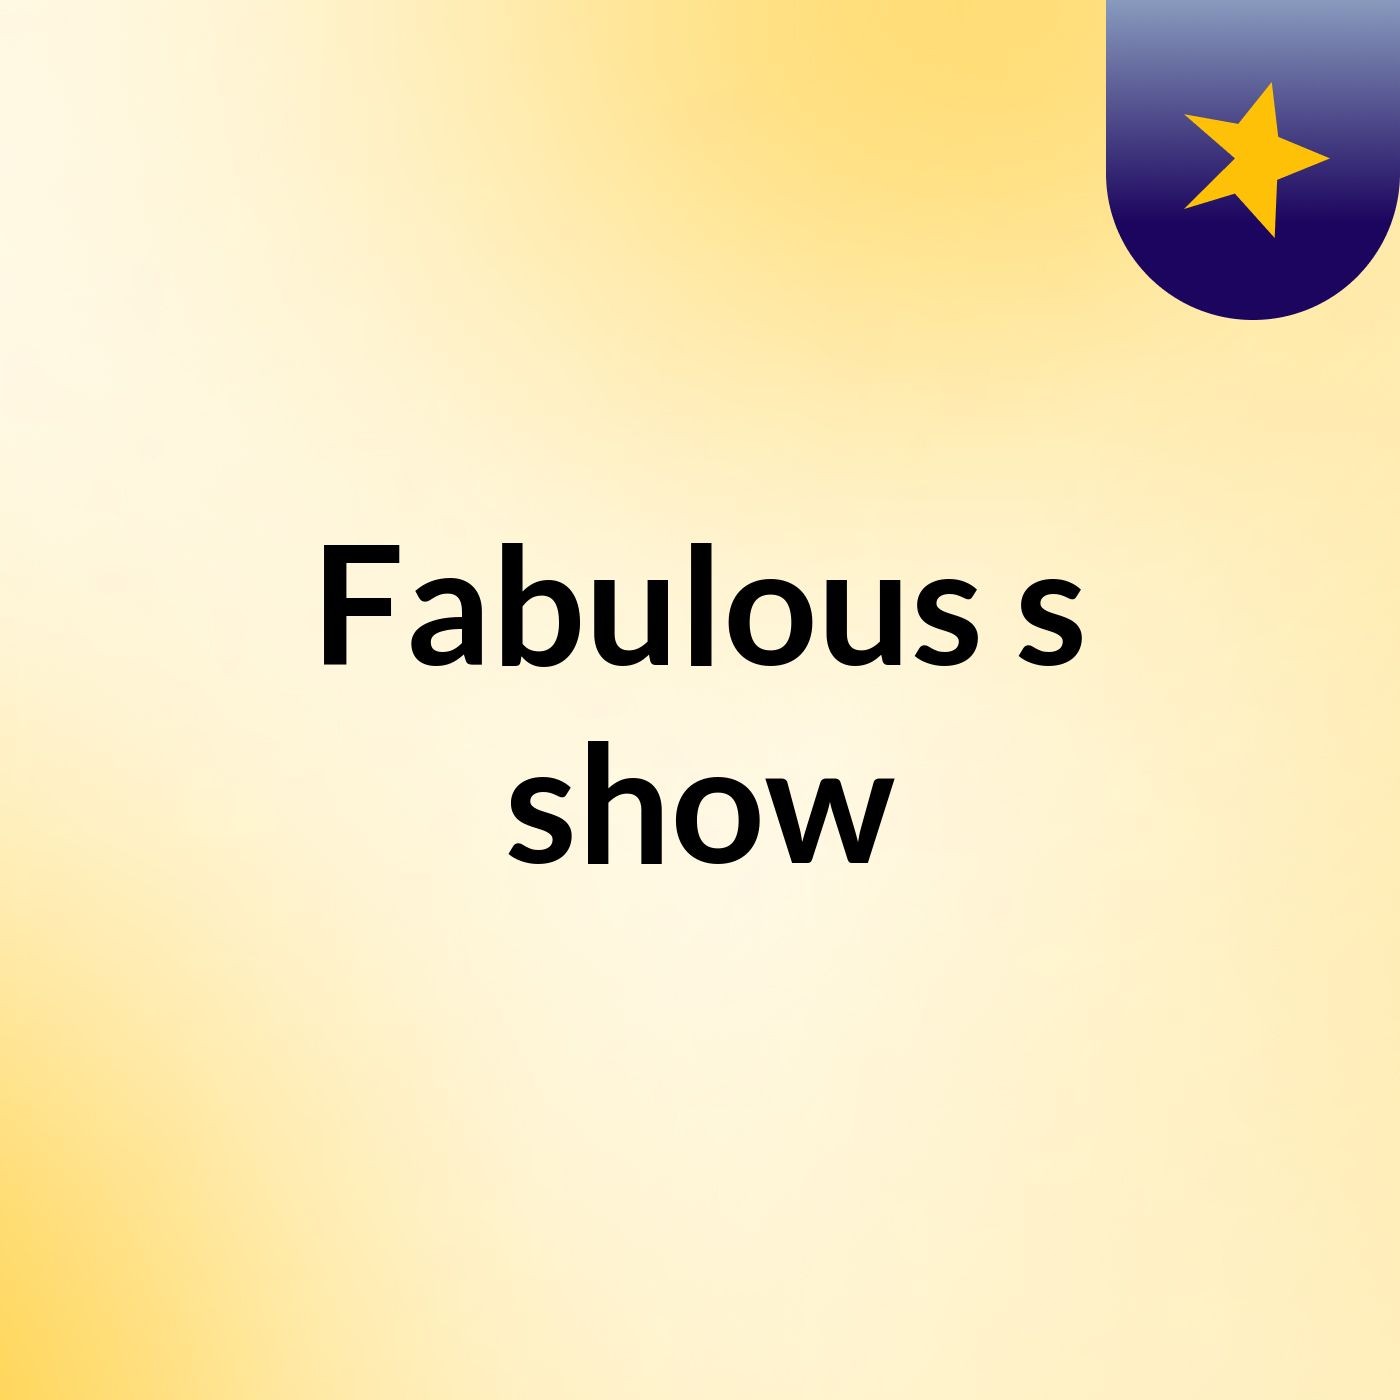 Fabulous's show